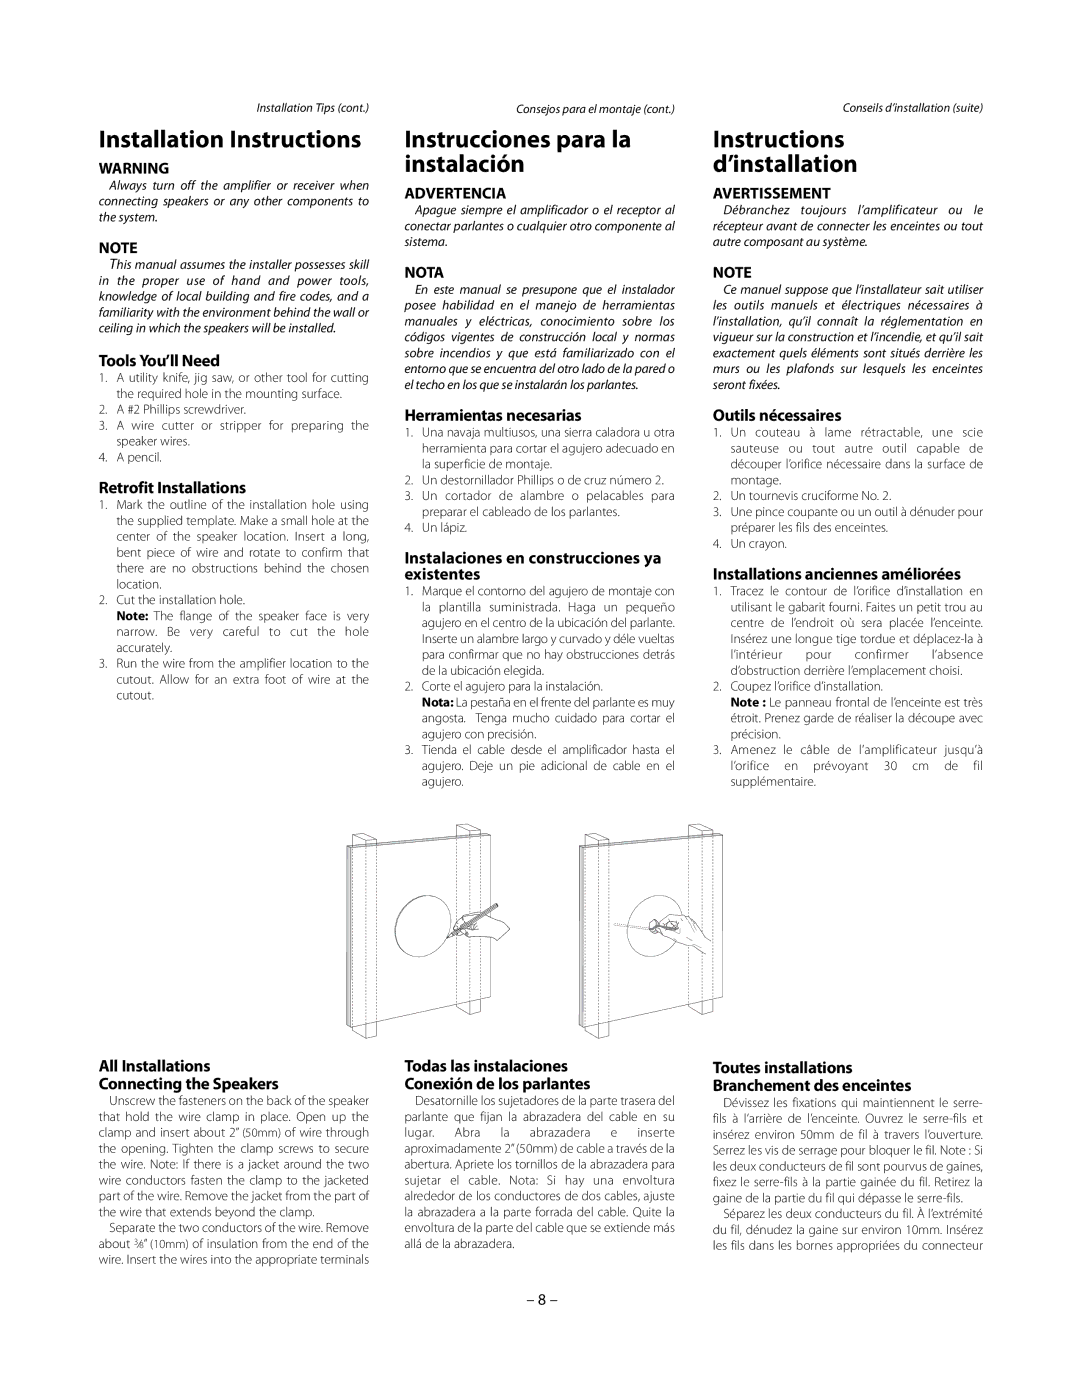 Boston Acoustics HSi 430CV, HSi 435CV owner manual Installation Instructions, Instrucciones para la instalación 